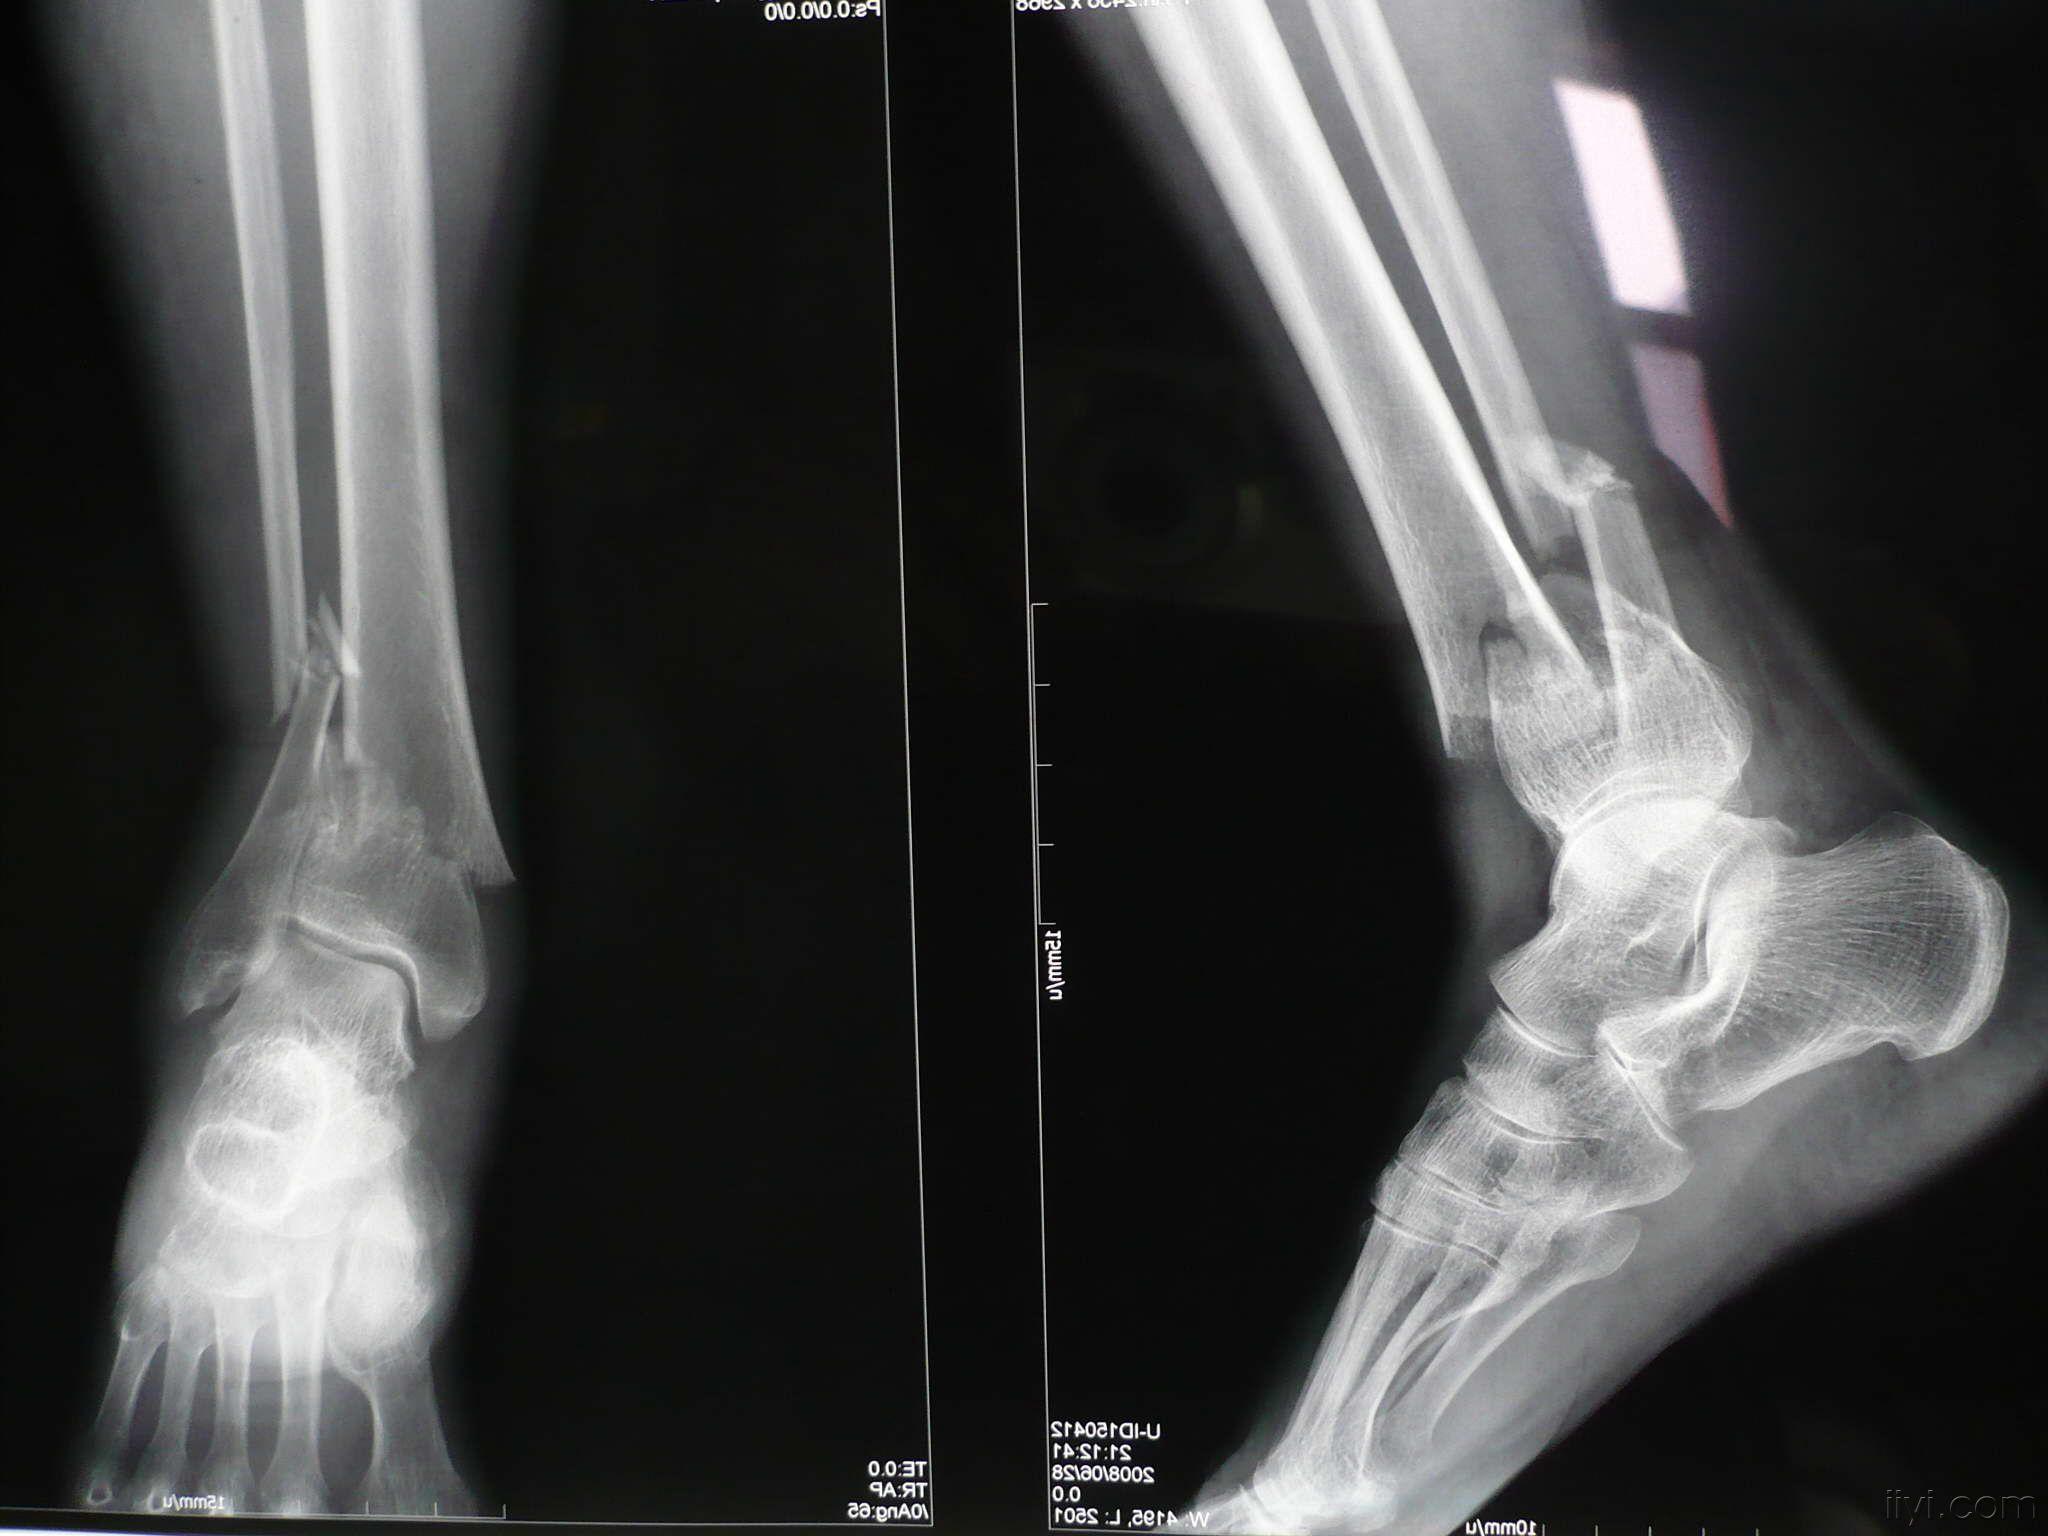 【病例讨论】左胫腓骨骨折,左小腿碾压伤半月!